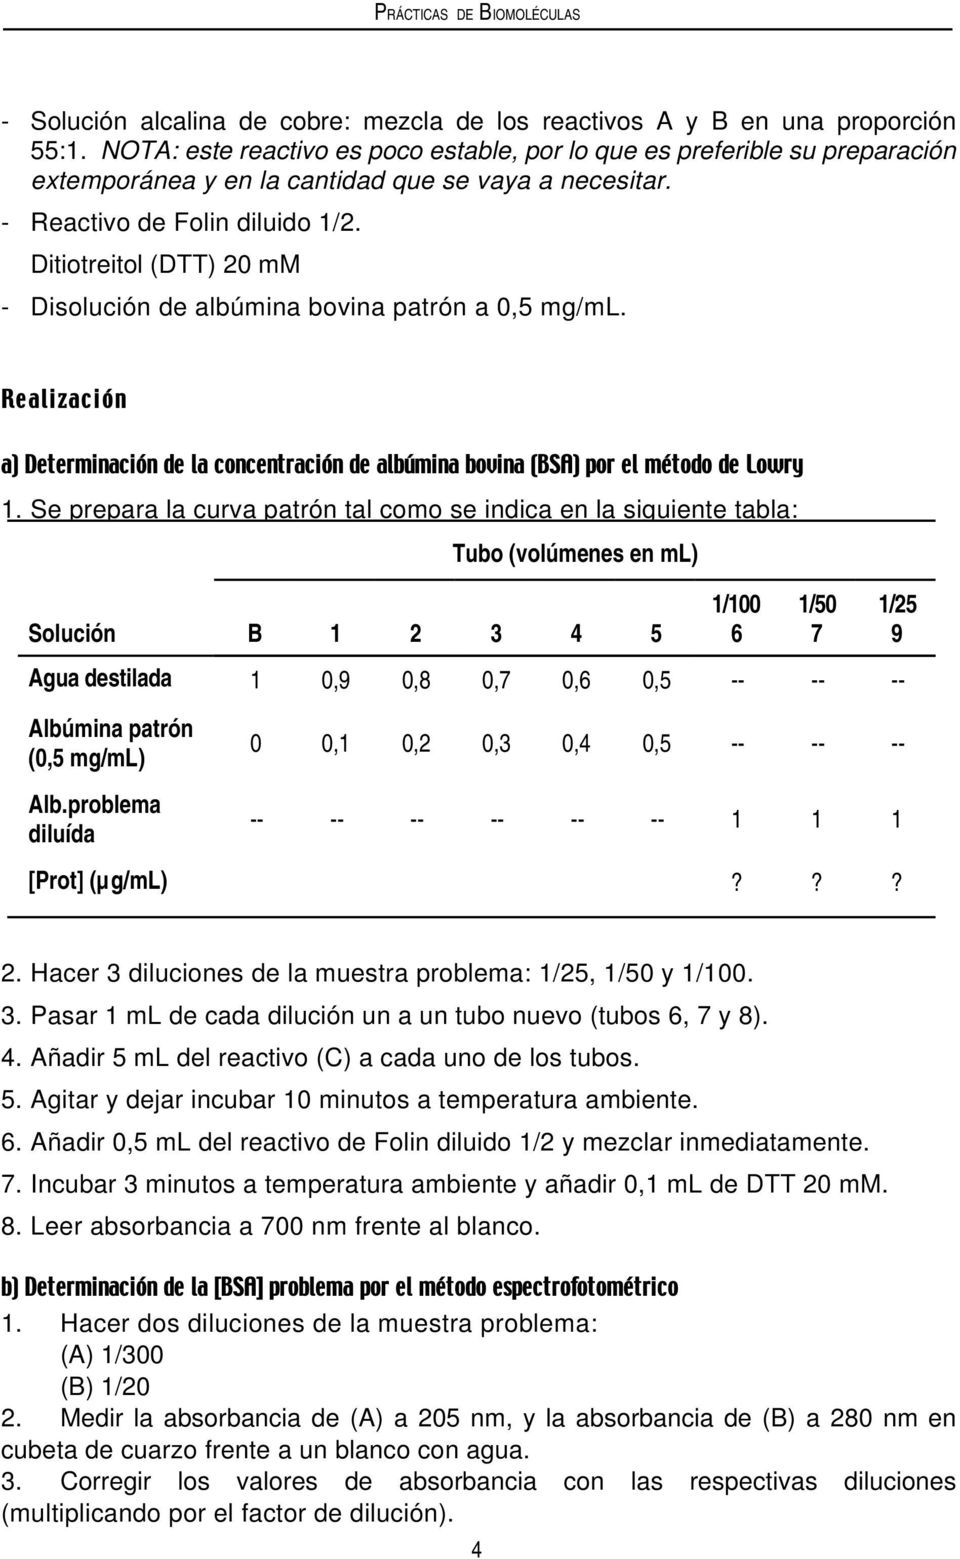 Ditiotreitol (DTT) 20 mm - Disolución de albúmina bovina patrón a 0,5 mg/ml. 1.